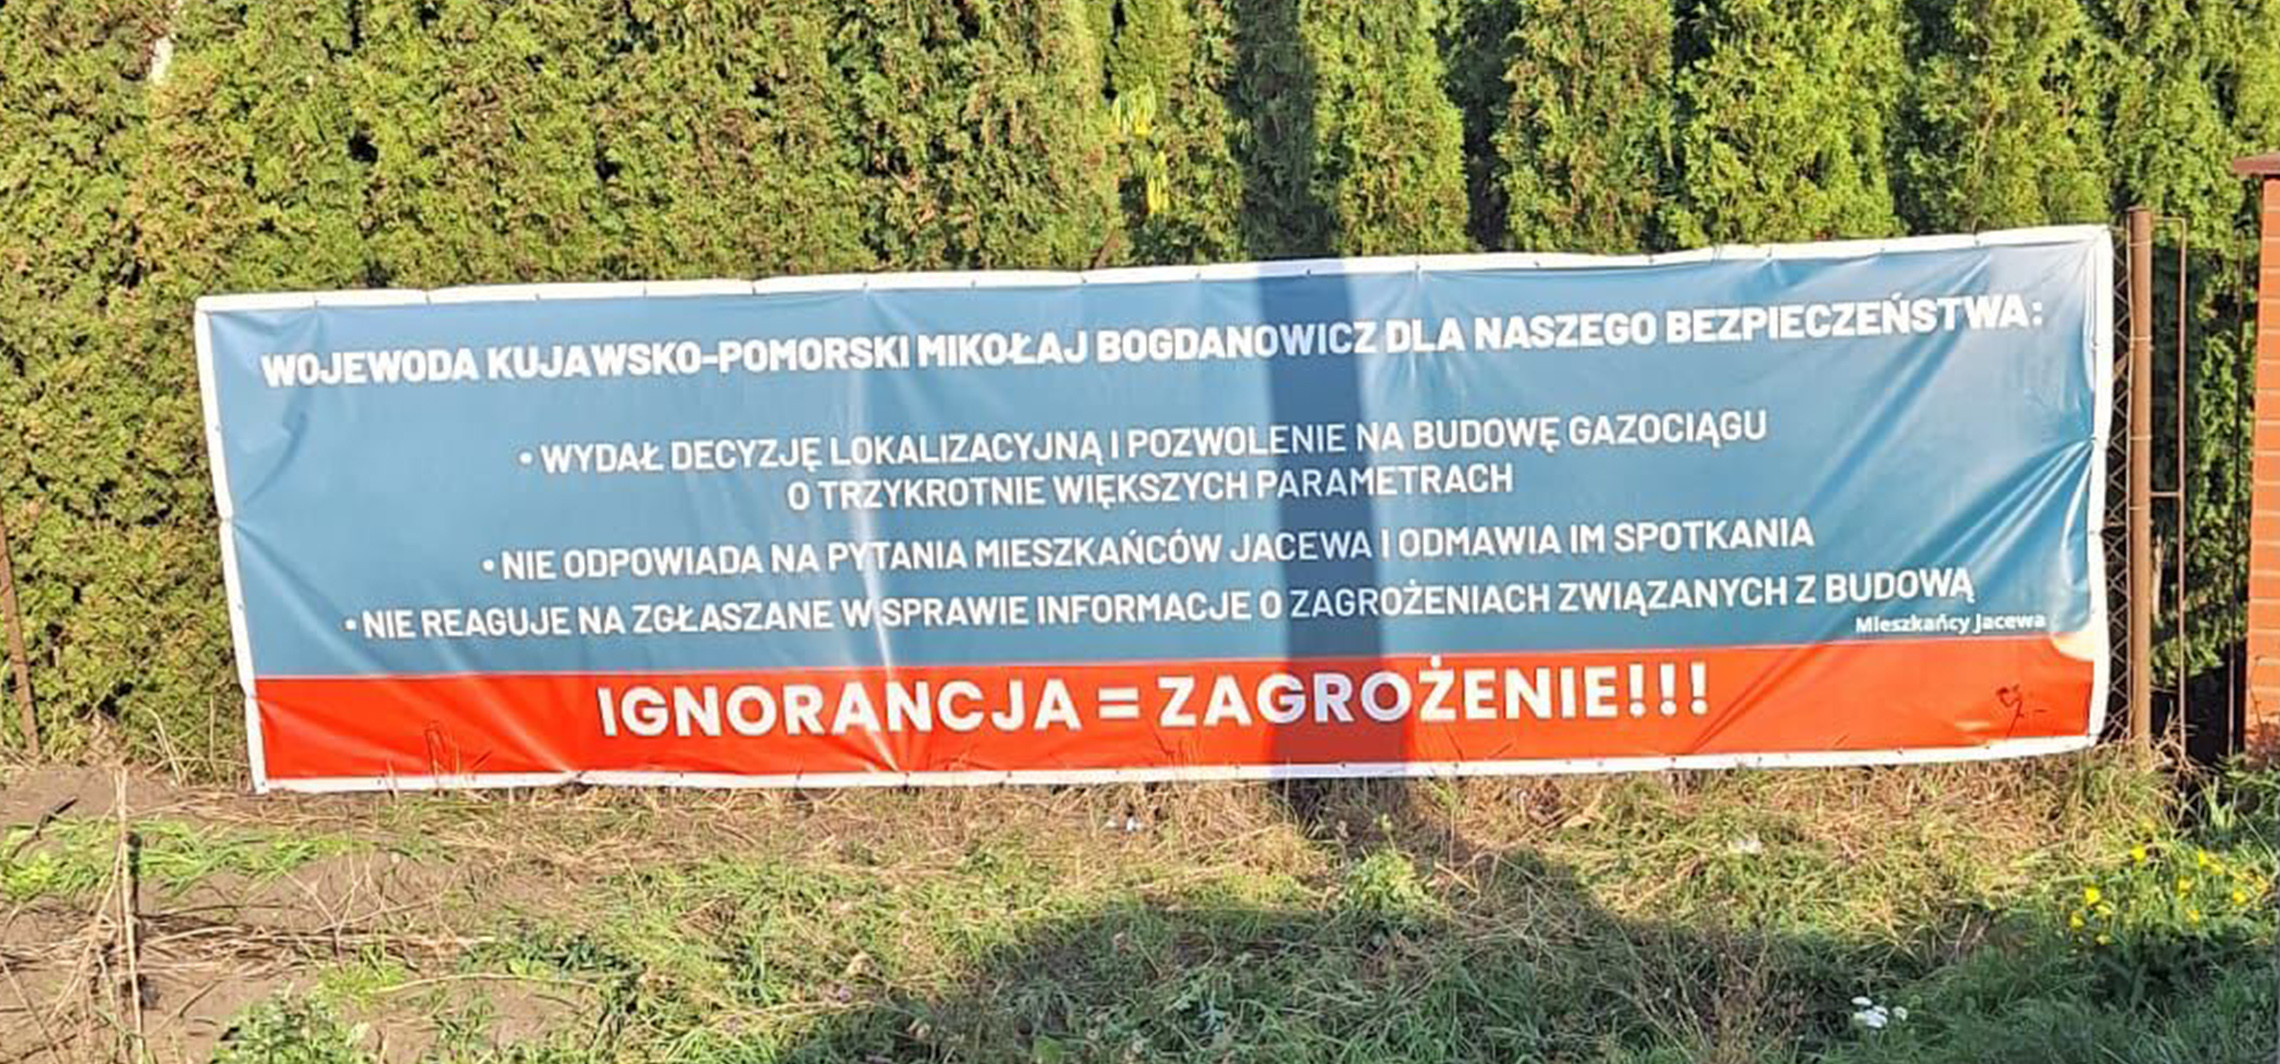 Gmina Inowrocław - Mieszkańcy Jacewa rozpoczęli protest. Wywieszono banery